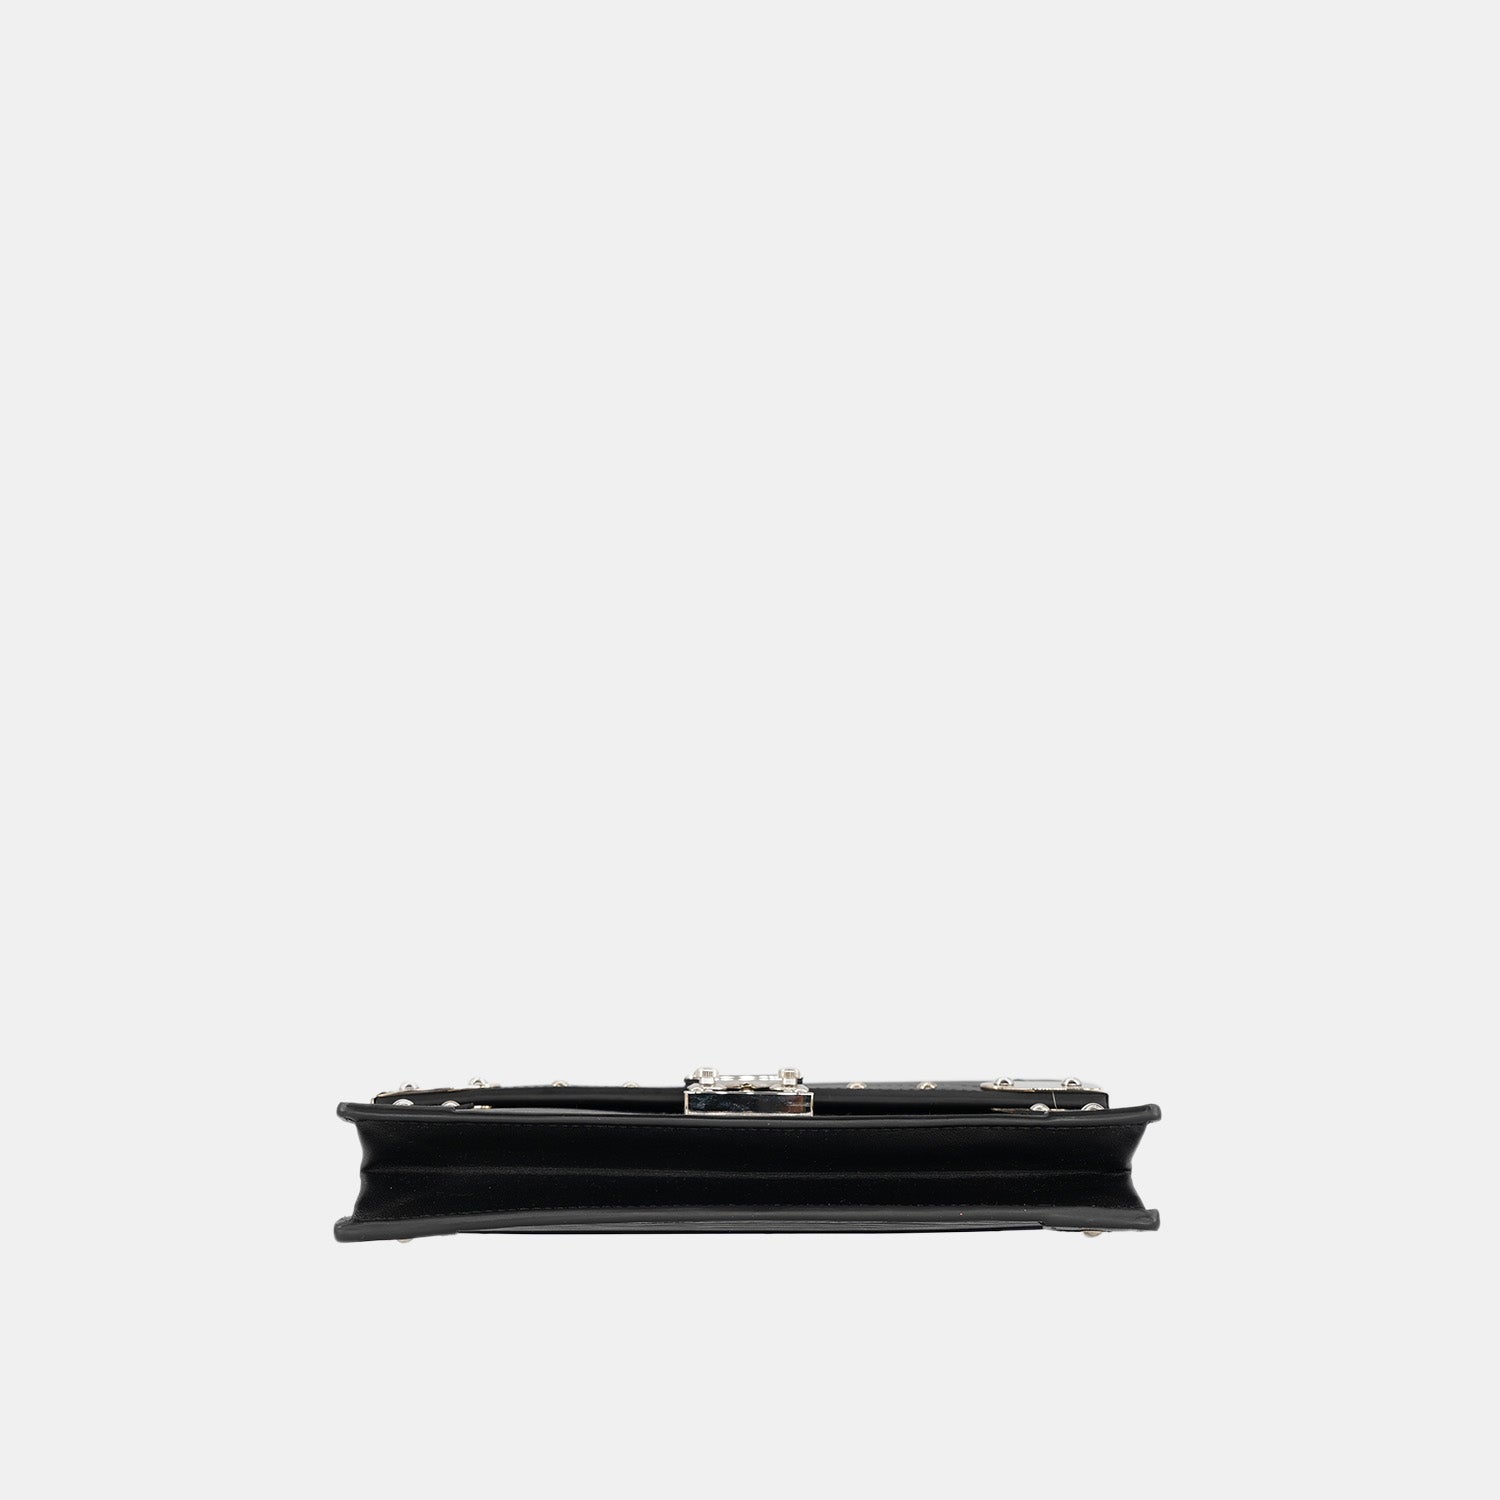 Louis Vuitton 2021-22FW Trunk chain wallet (M67507, M67508)